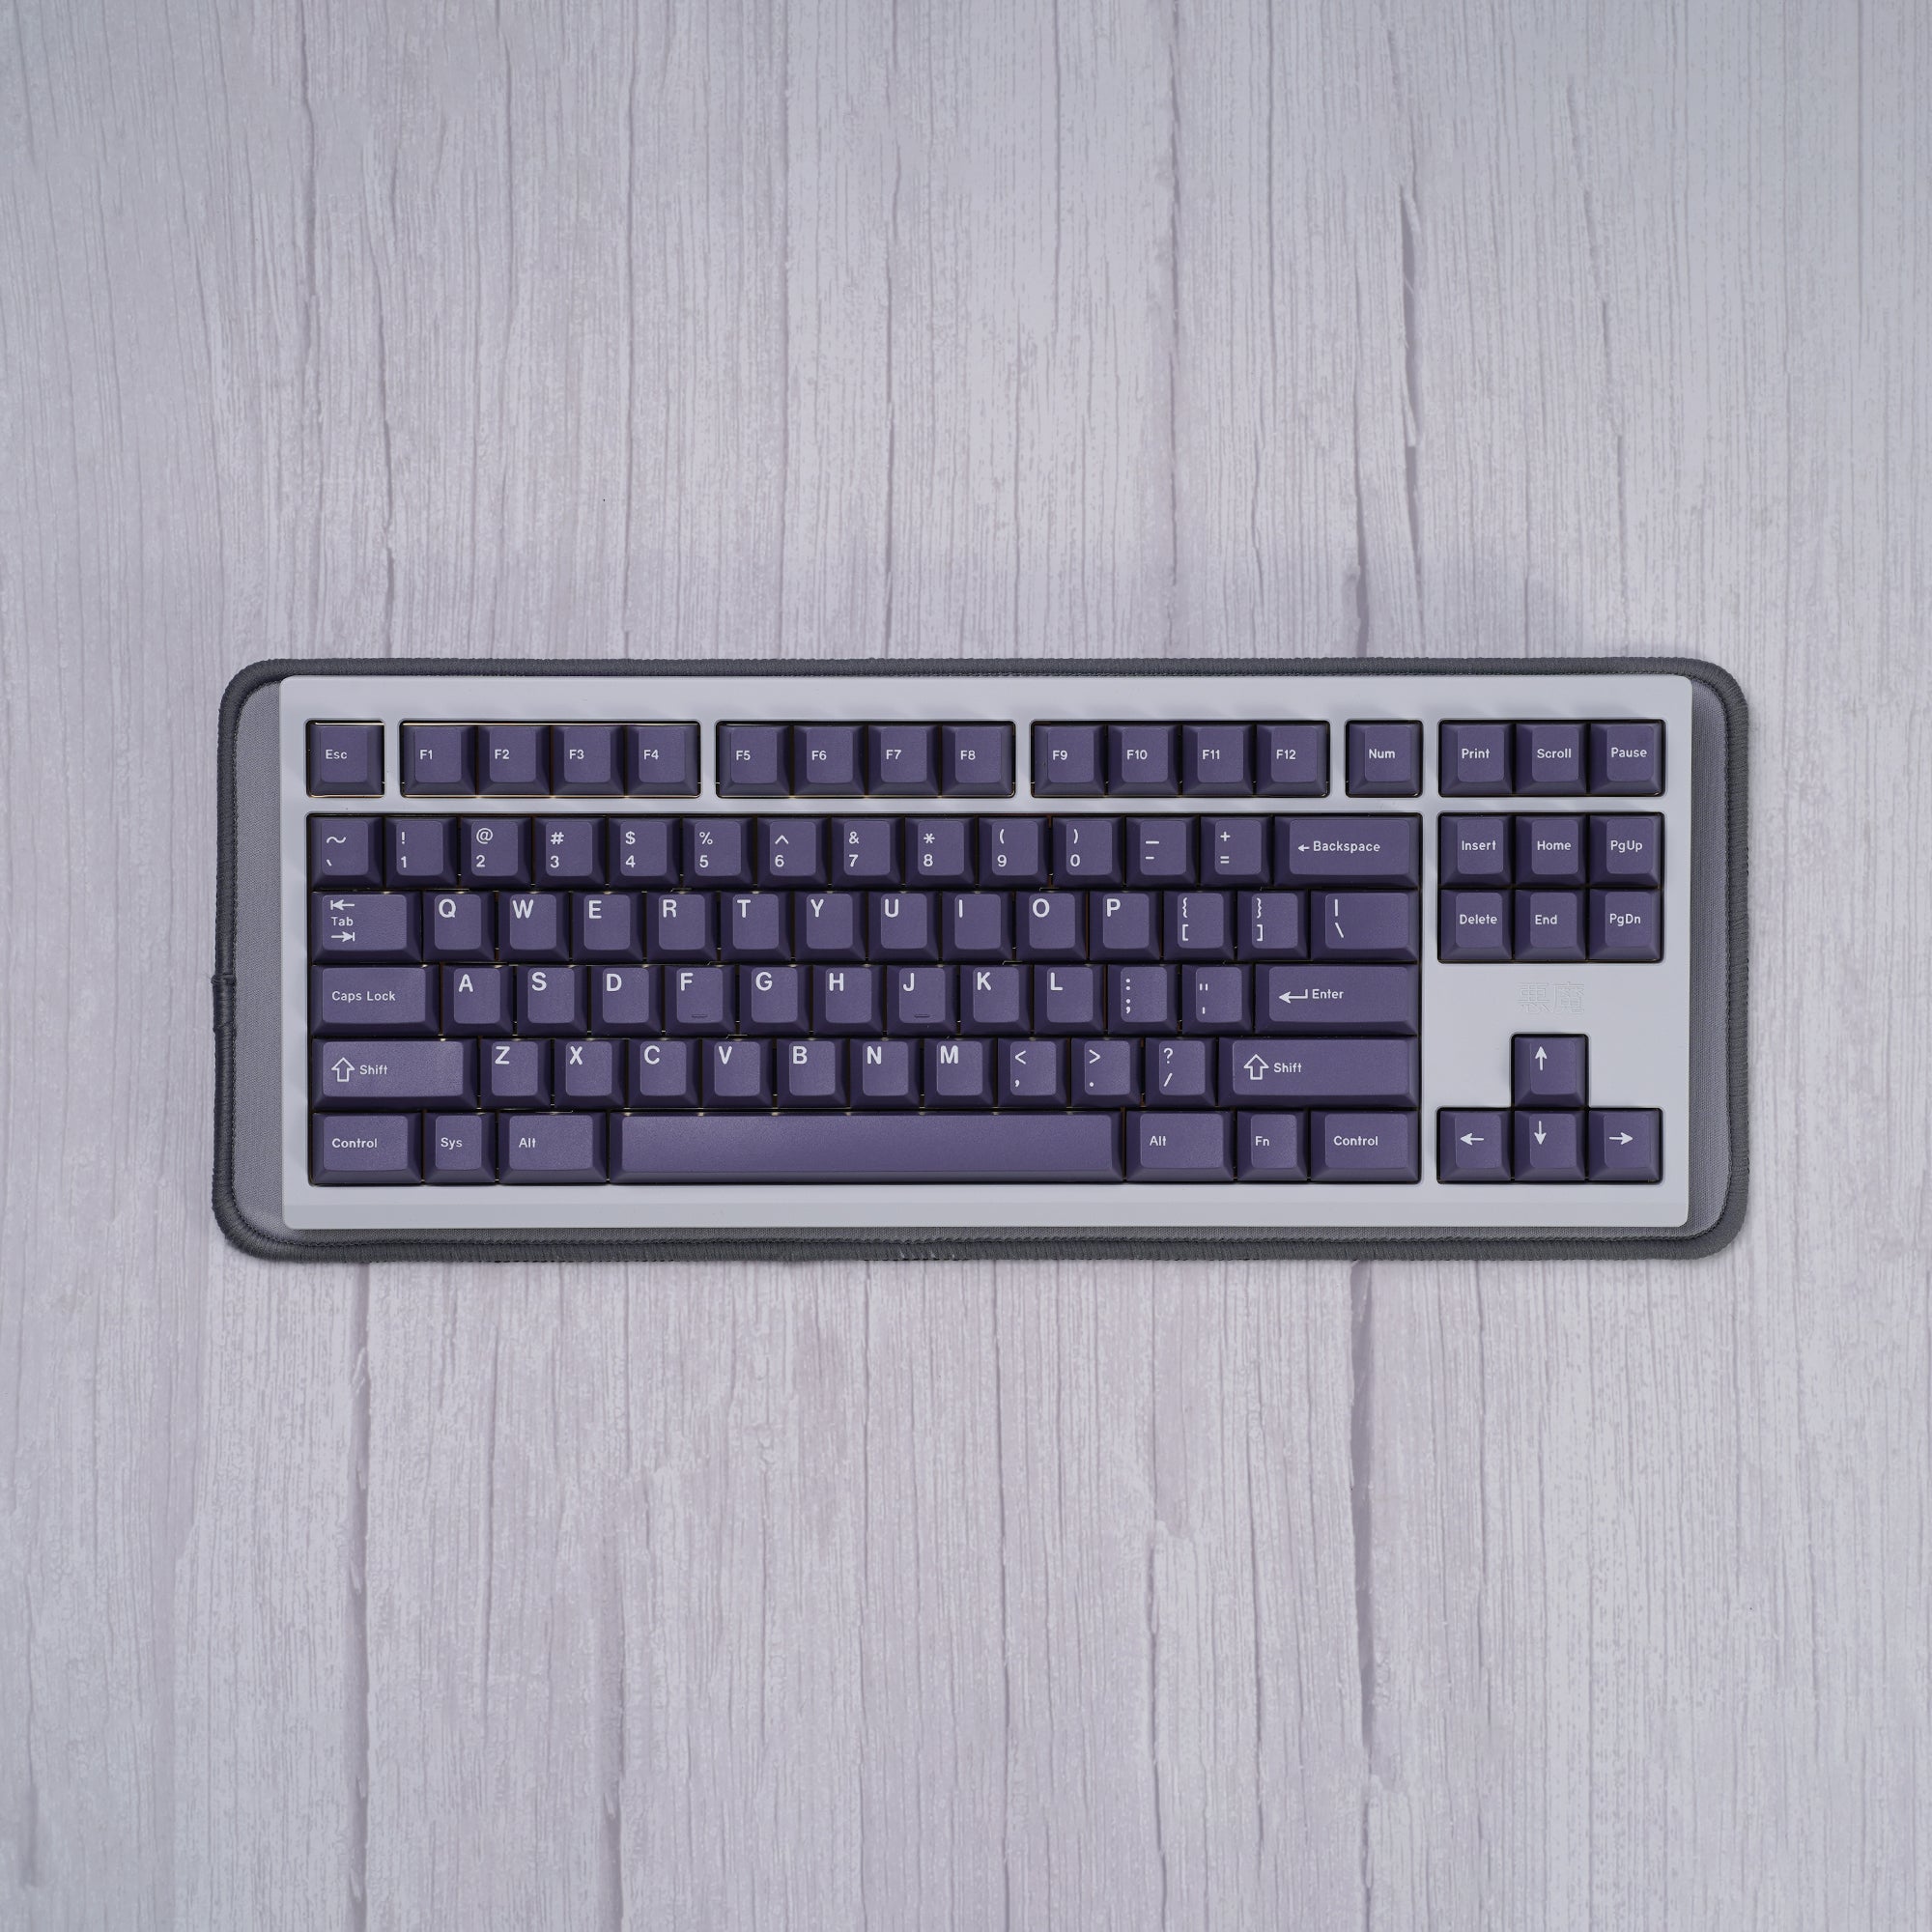 Keyboard mat